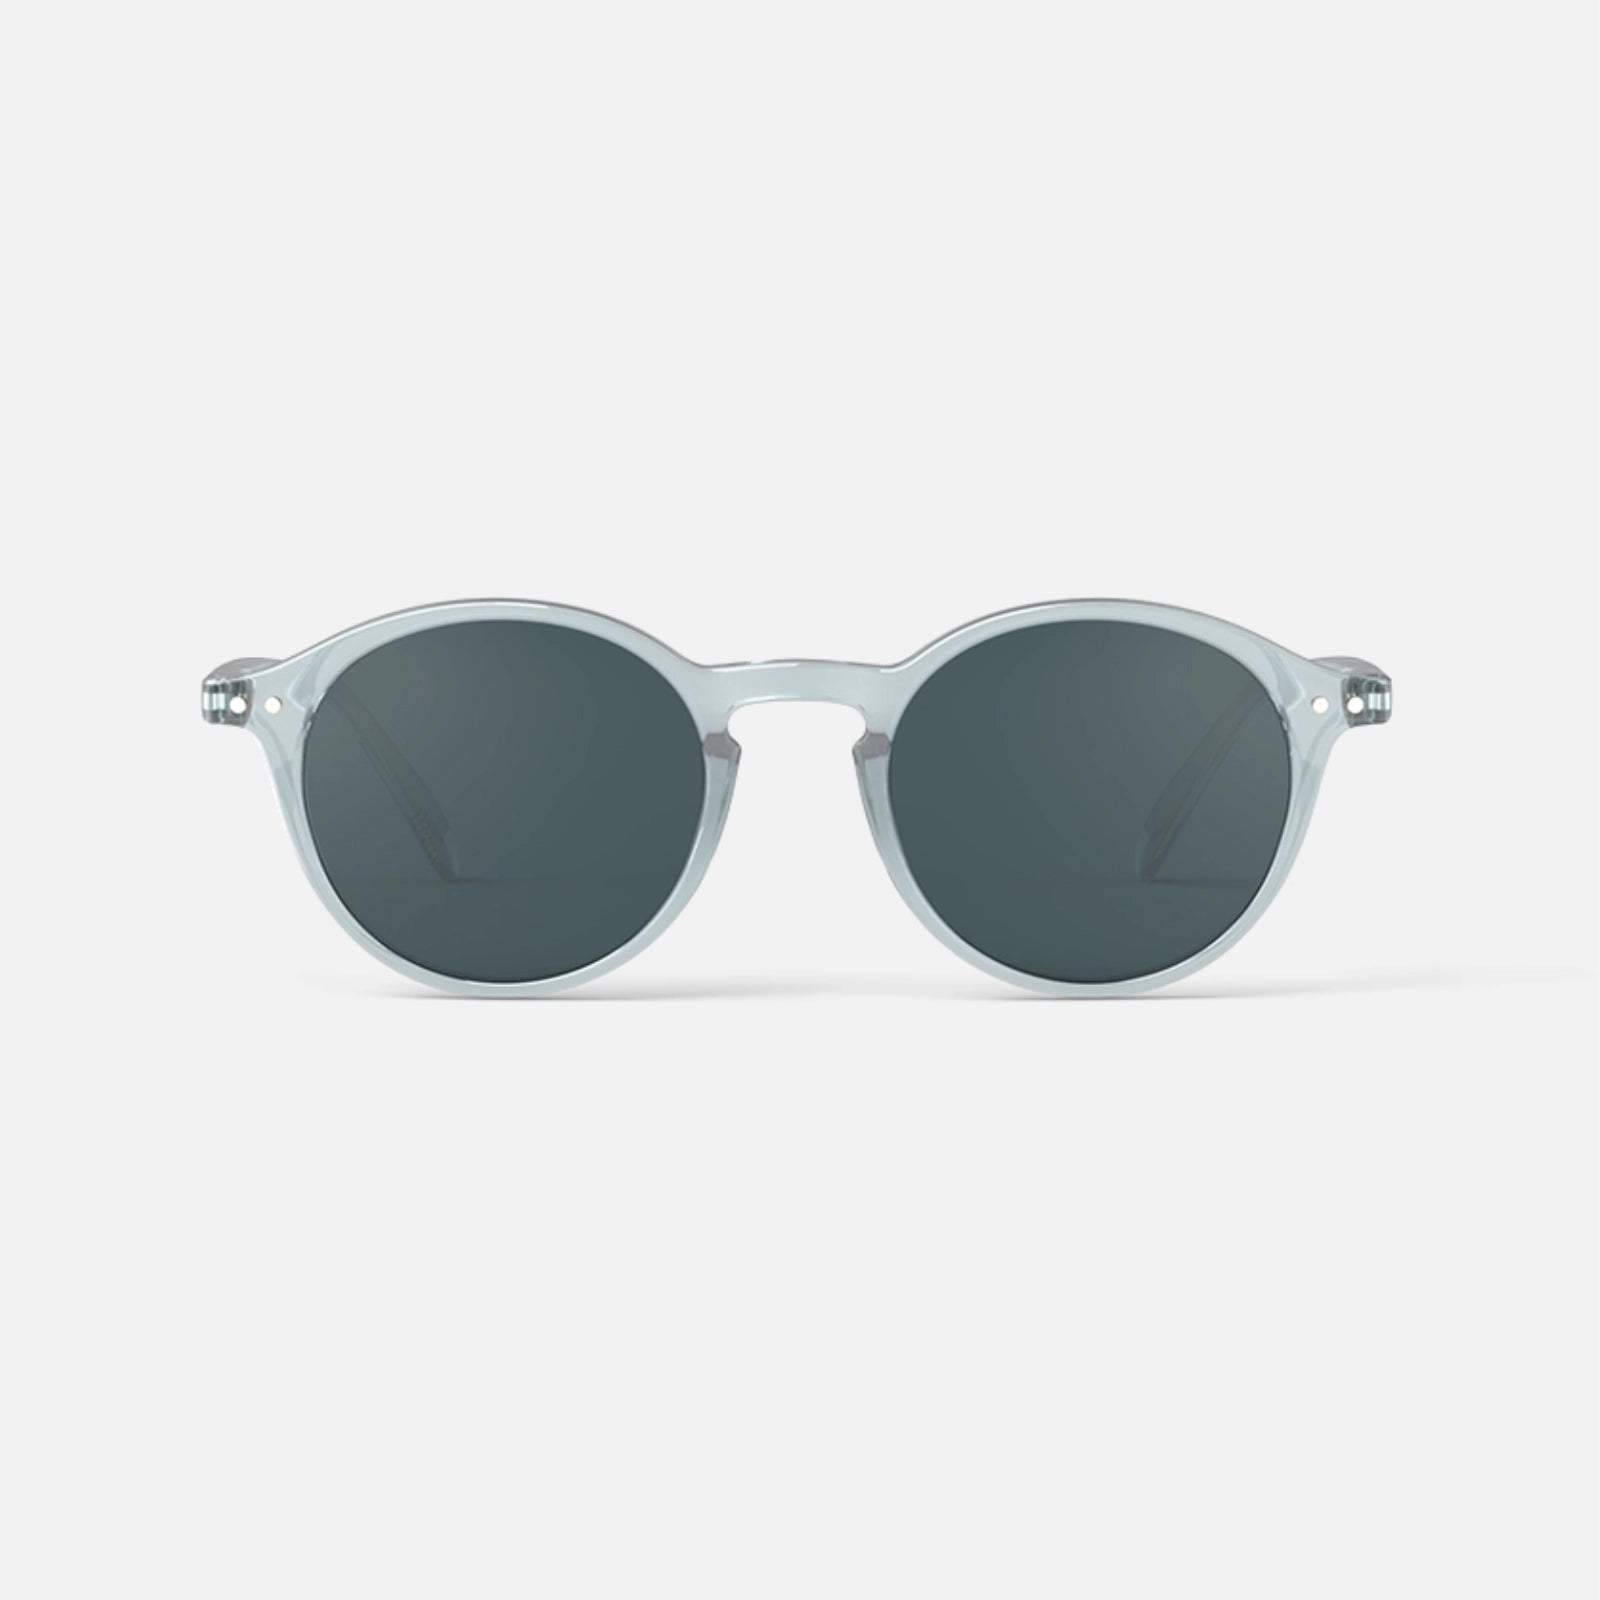 Model D solbriller fra Izipizi i Frozen Blue forfra